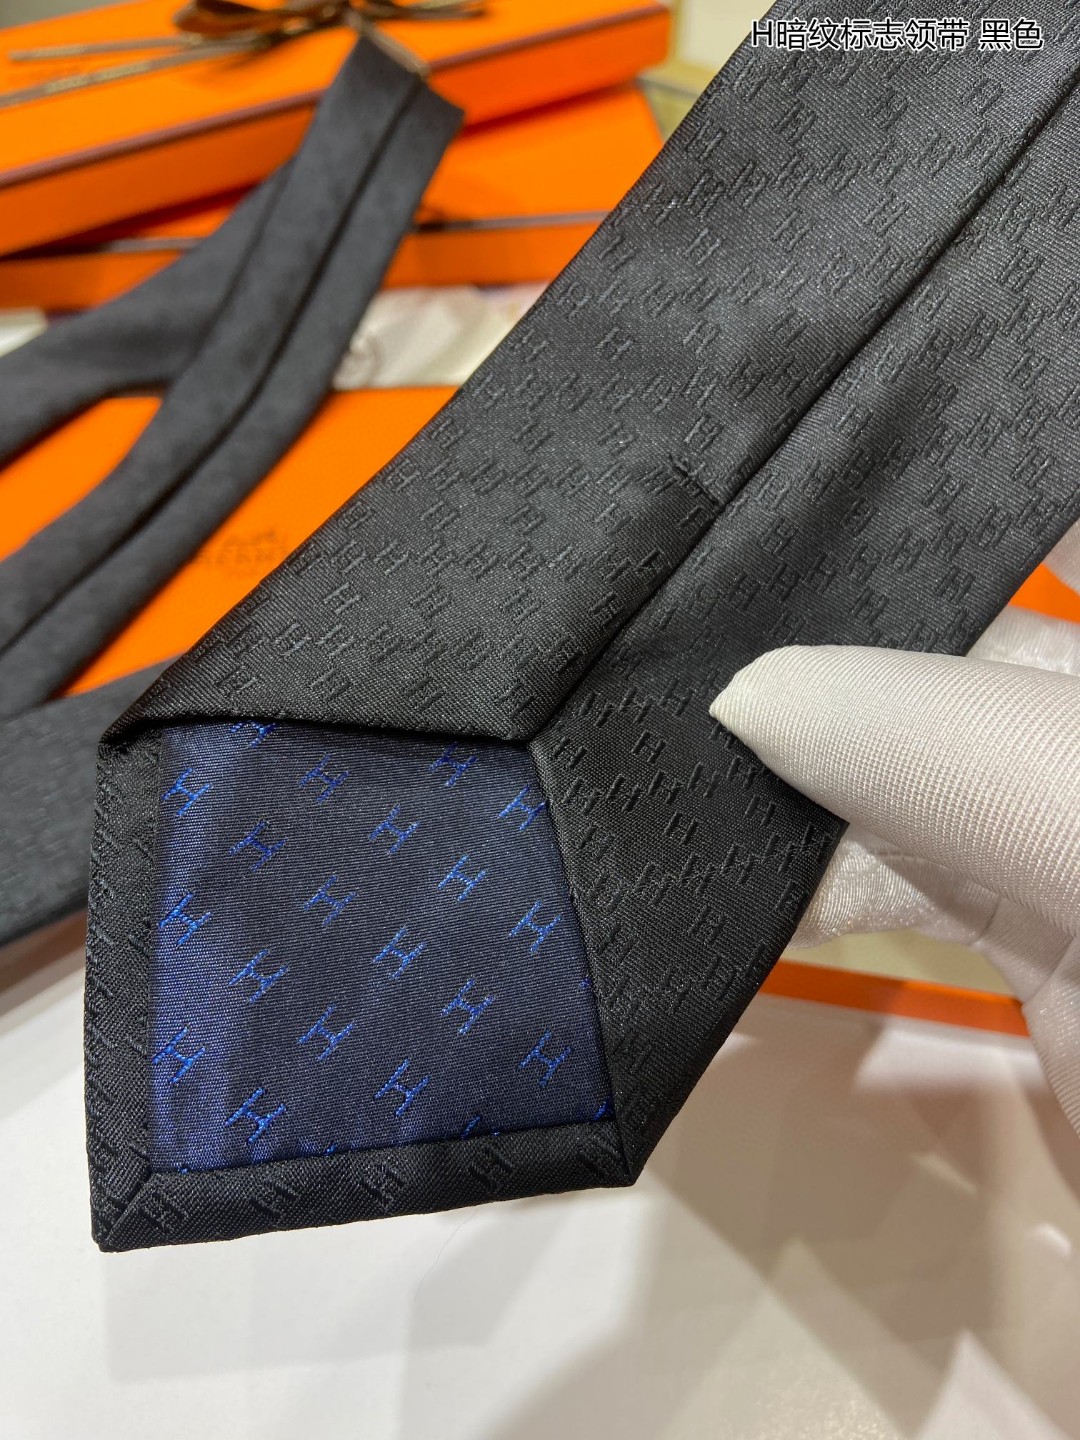 男士新款领带系列H暗纹标志领带稀有H